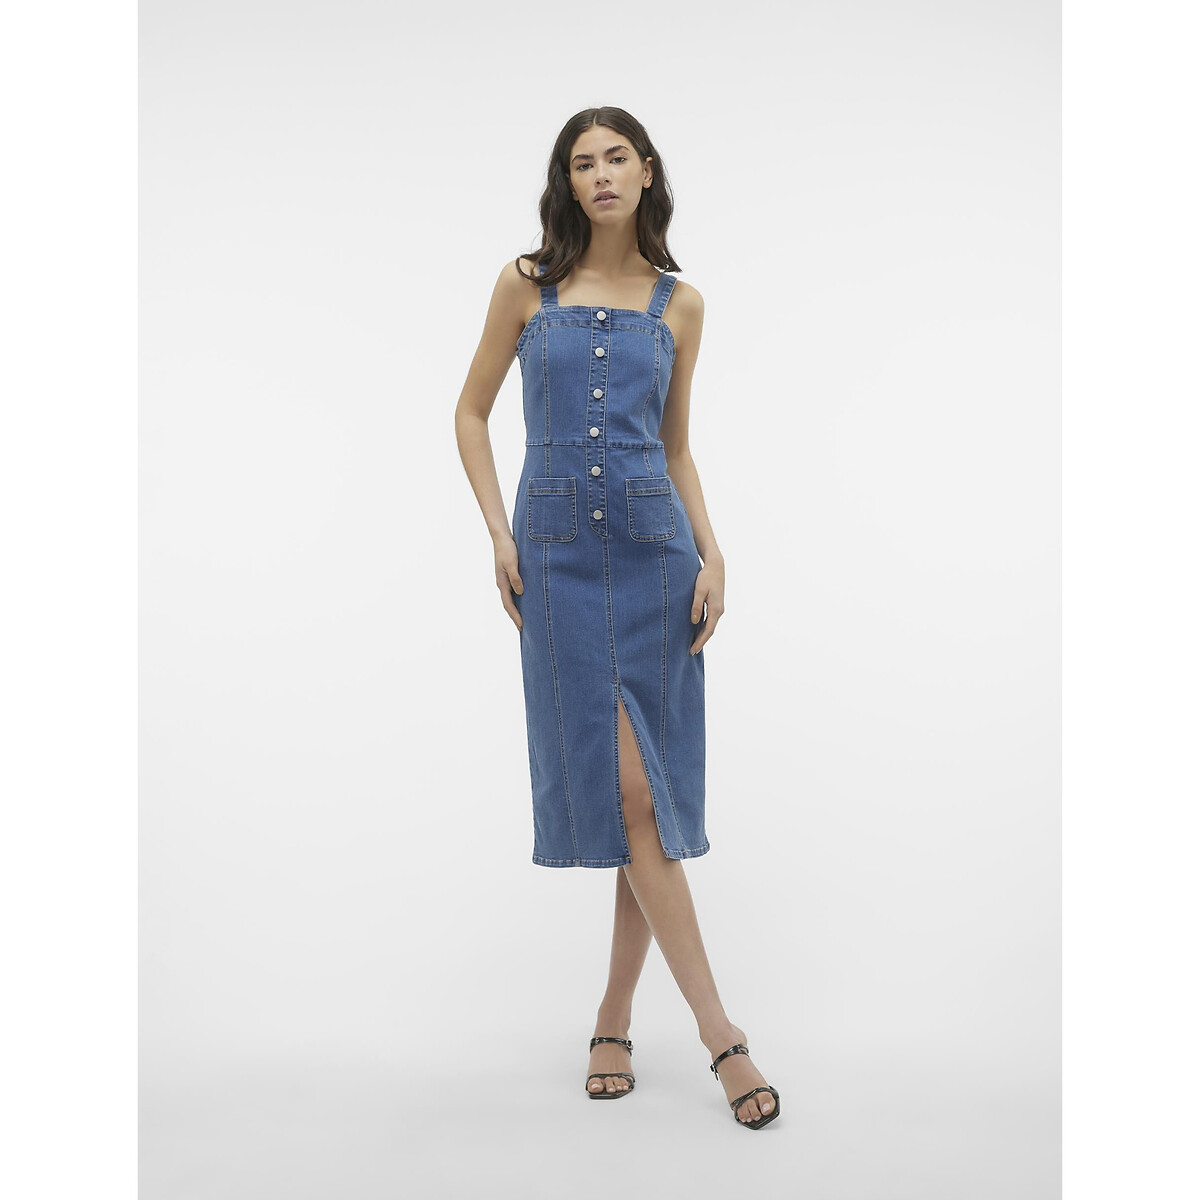 Платье-комбинезон из джинсовой ткани  S синий LaRedoute, размер S